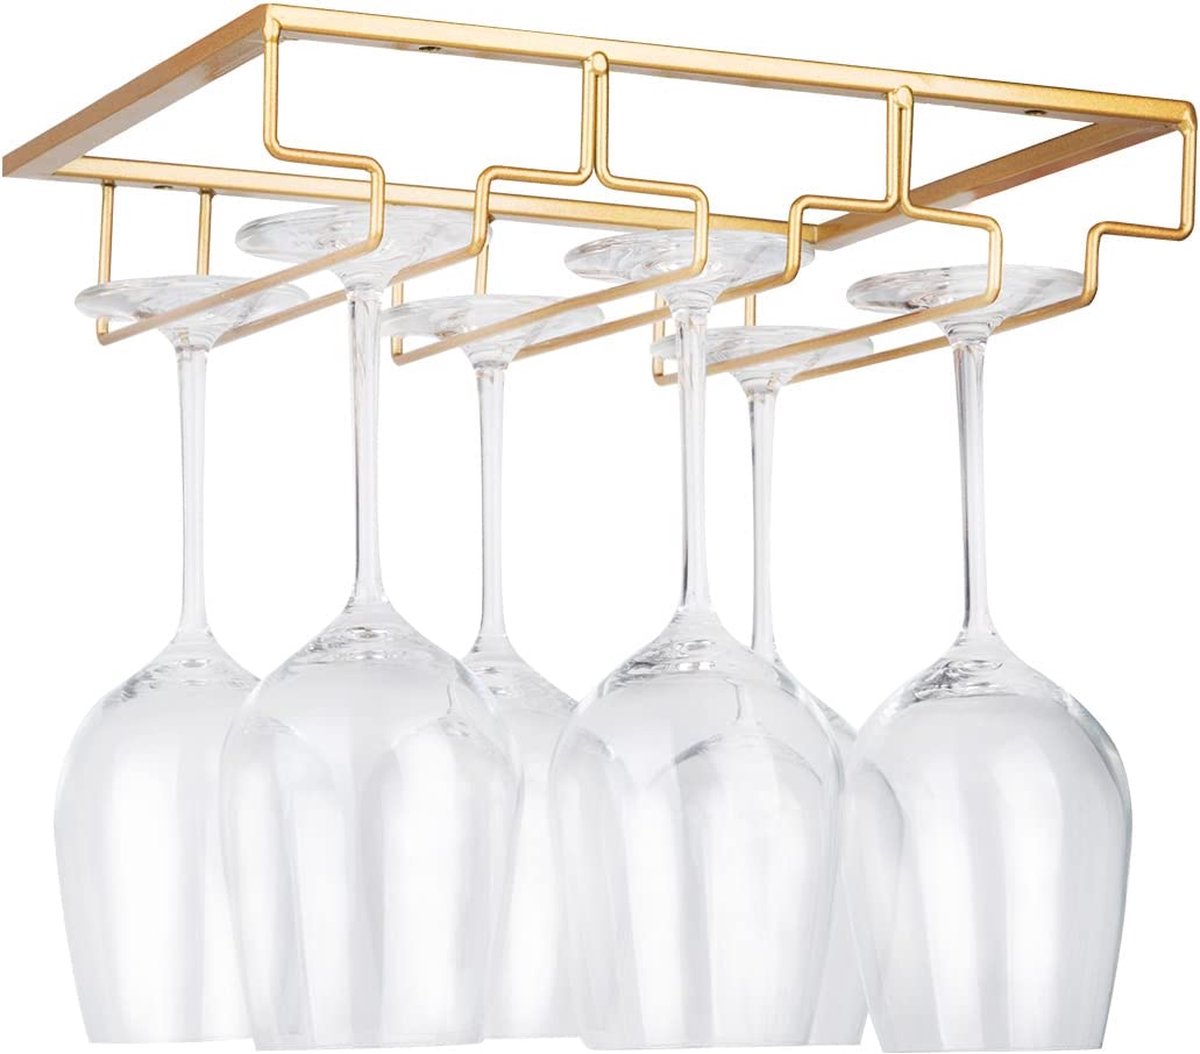 Wijnglashouder – standaard om op te hangen onder de kast van metaal met schroeven, opberghouder voor glas van roestvrij staal met 3 rijen, voor keuken, bar, restaurant, goudkleurig